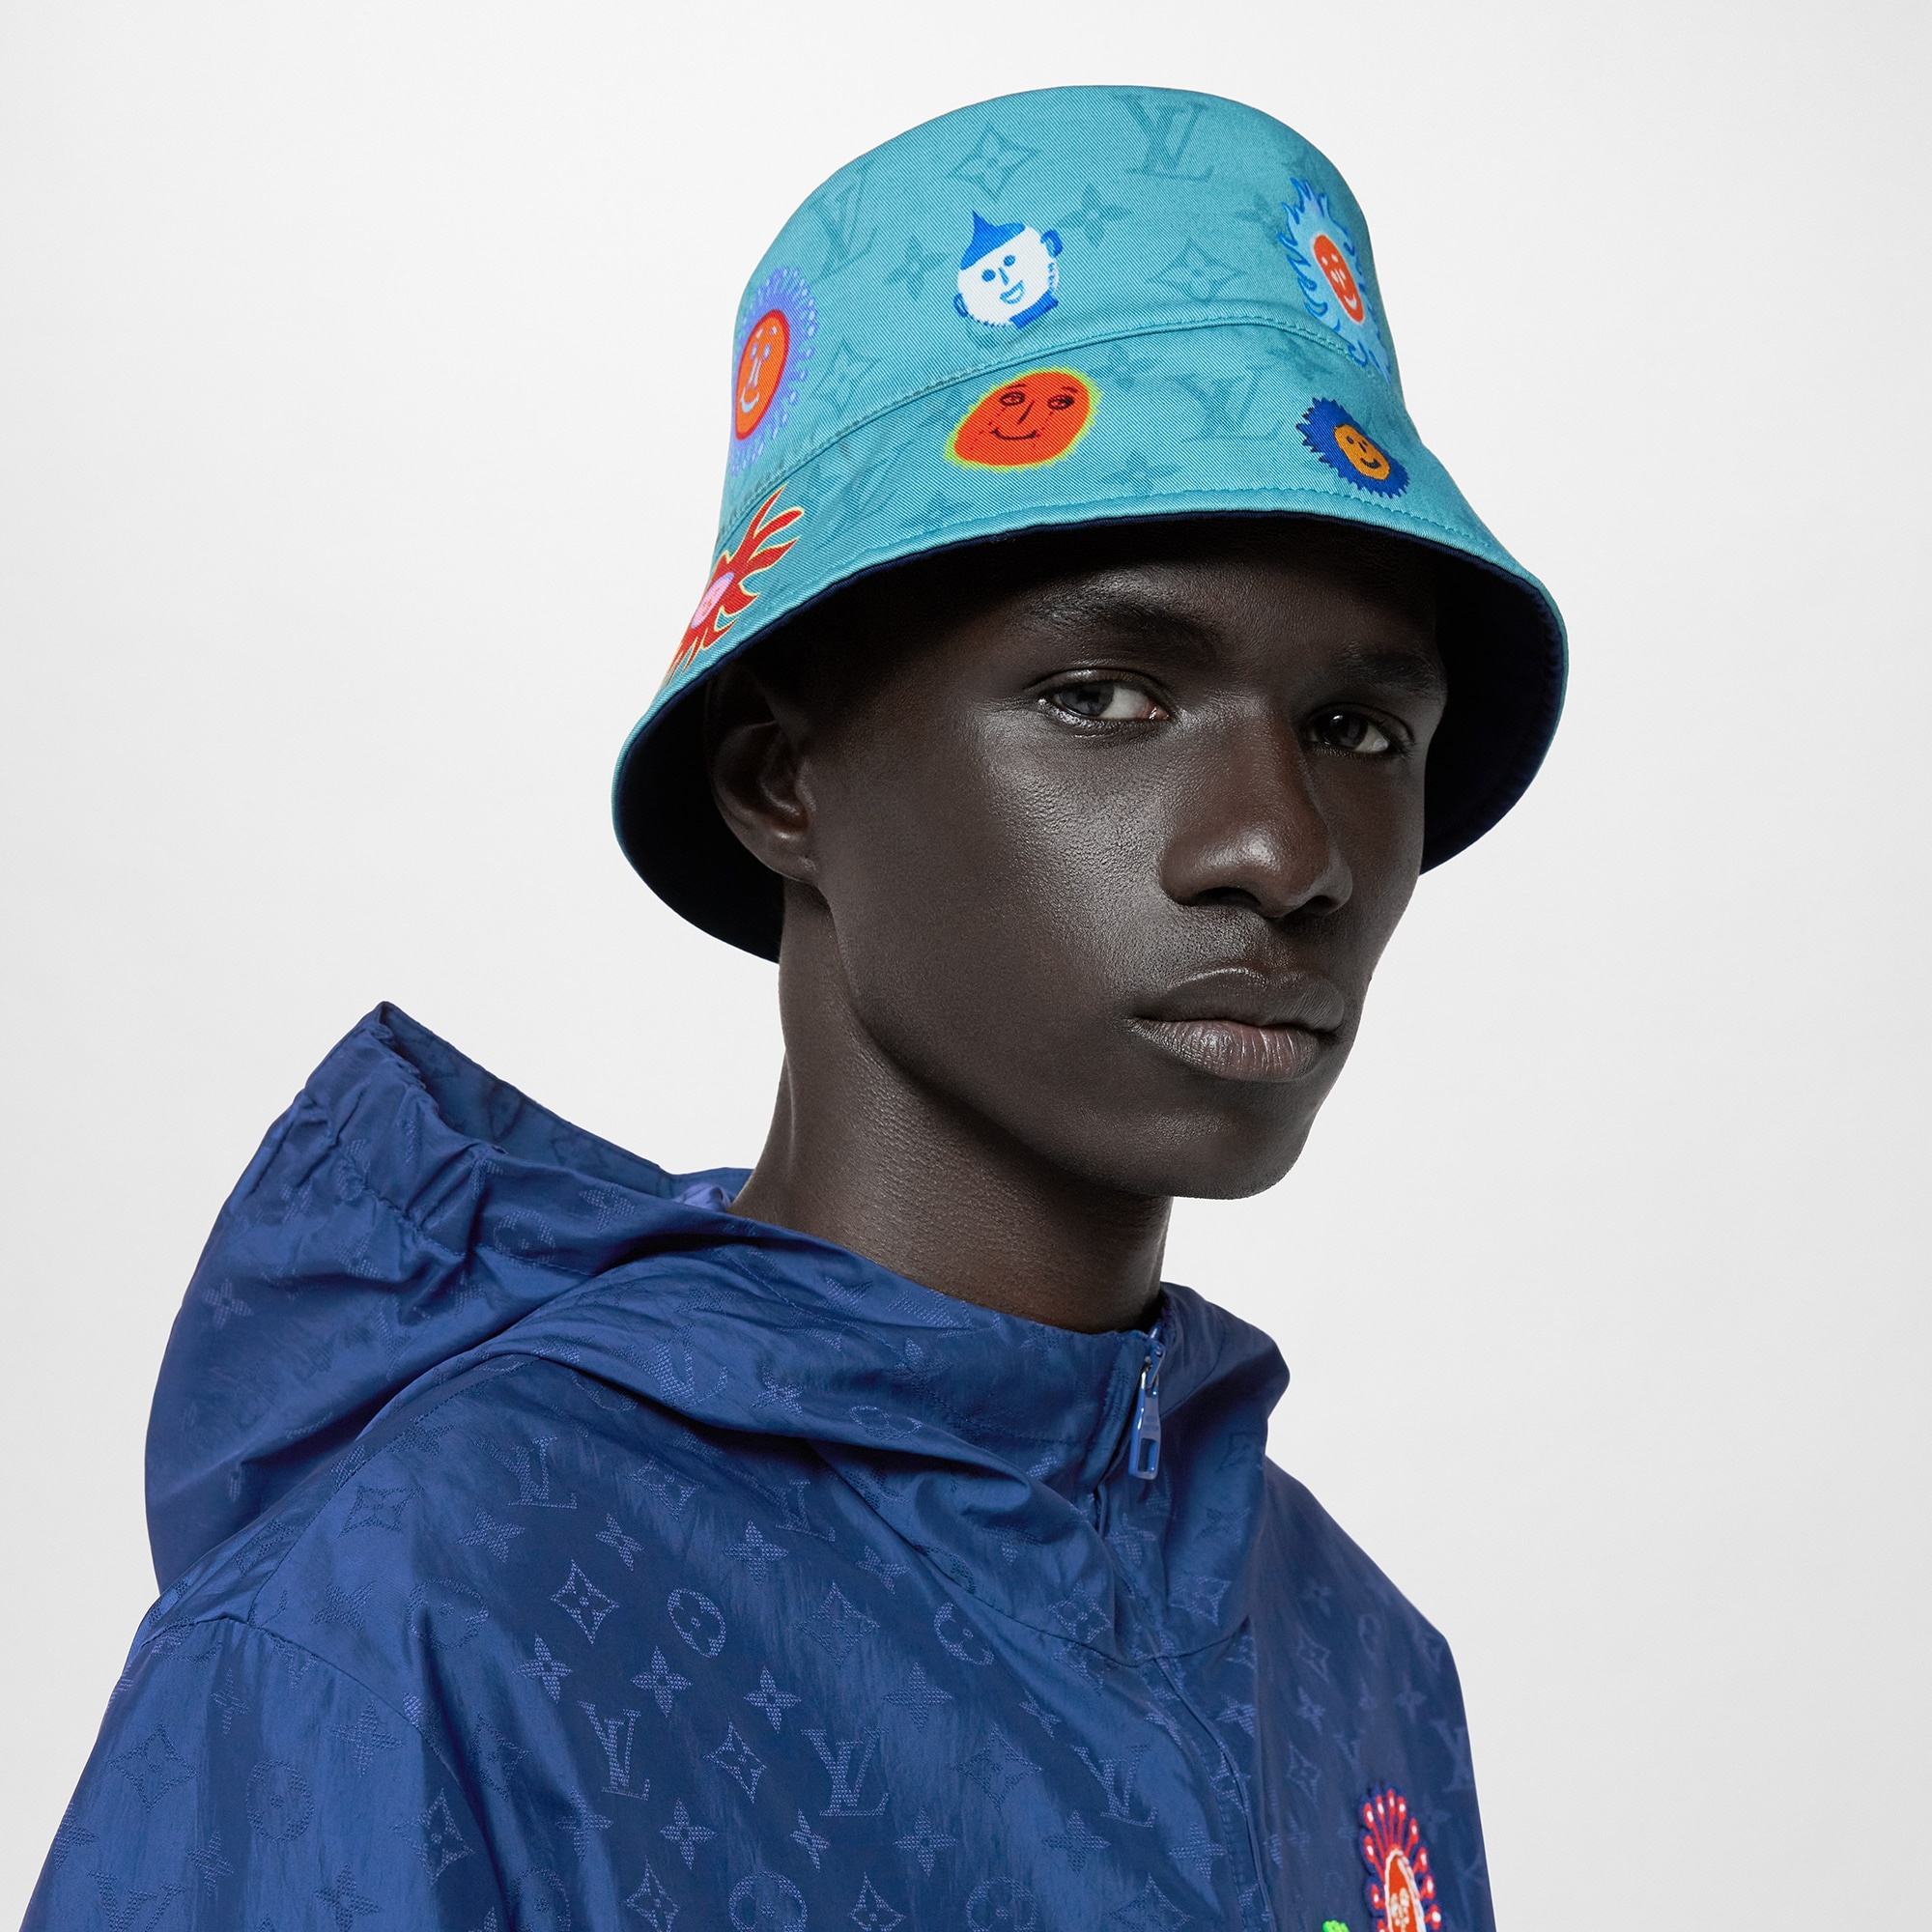 Louis Vuitton x Yayoi Kusama Reversible Bucket Hat